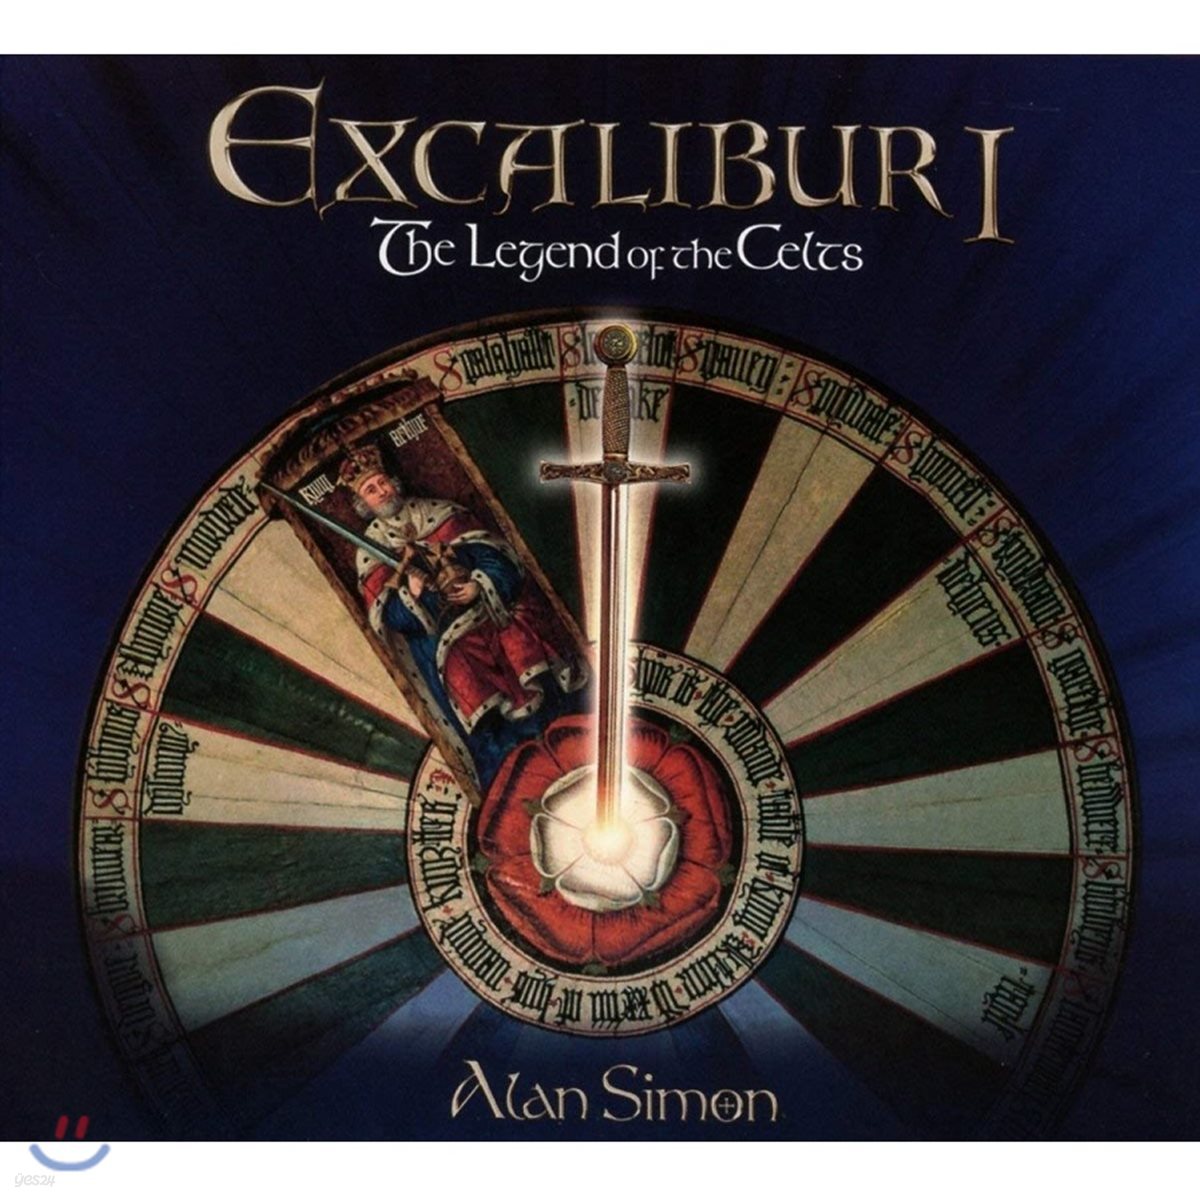 킹아서 전설을 모티브로 한 록 오페라 (Excalibur: The Legend Of The Celts by Alan Simon)